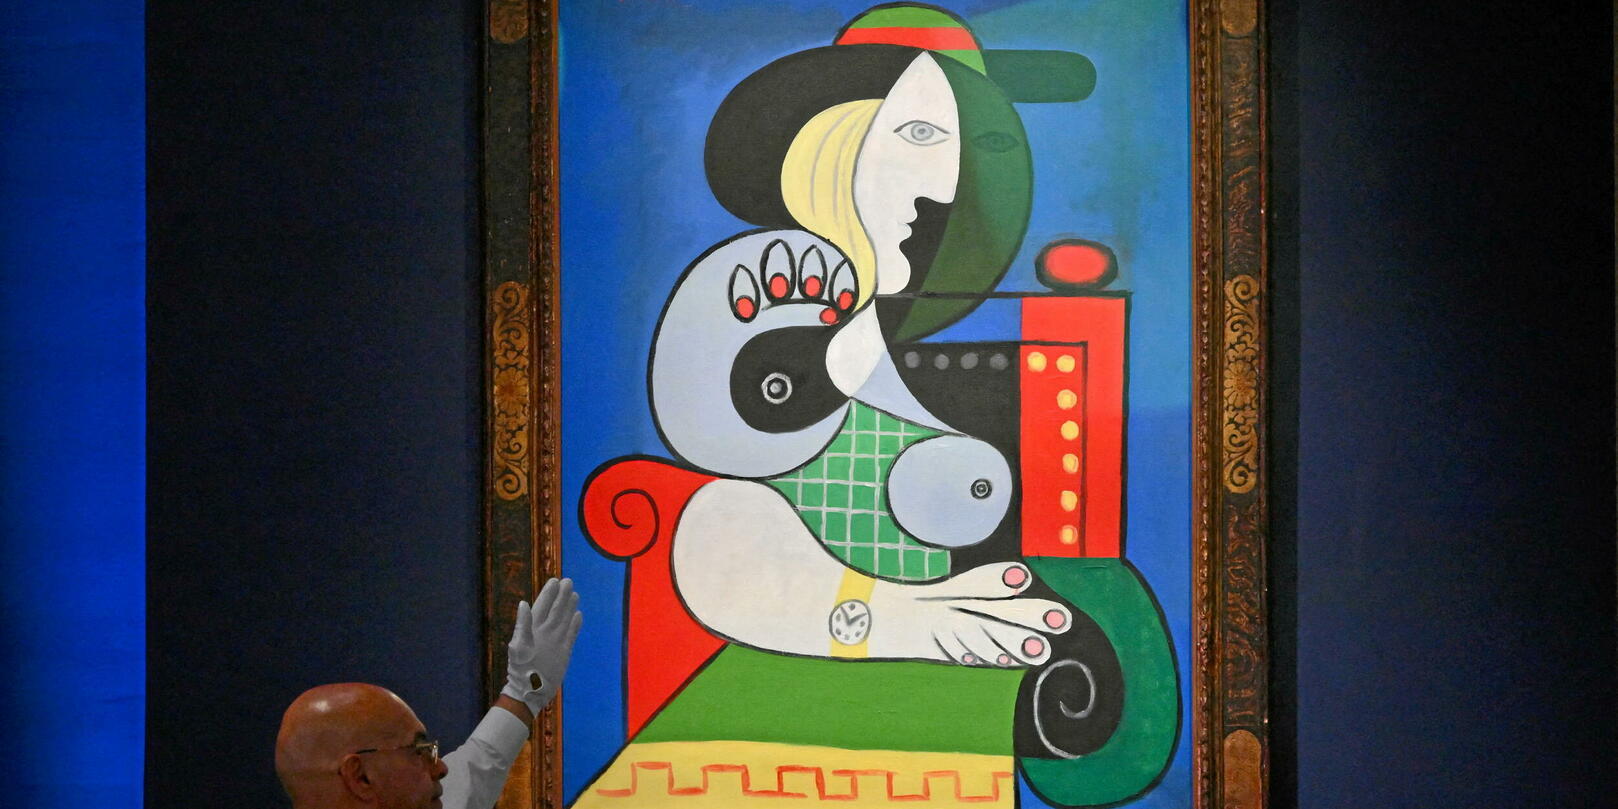 Tableau sur toile Zamart - Hommage à Picasso - Les femmes